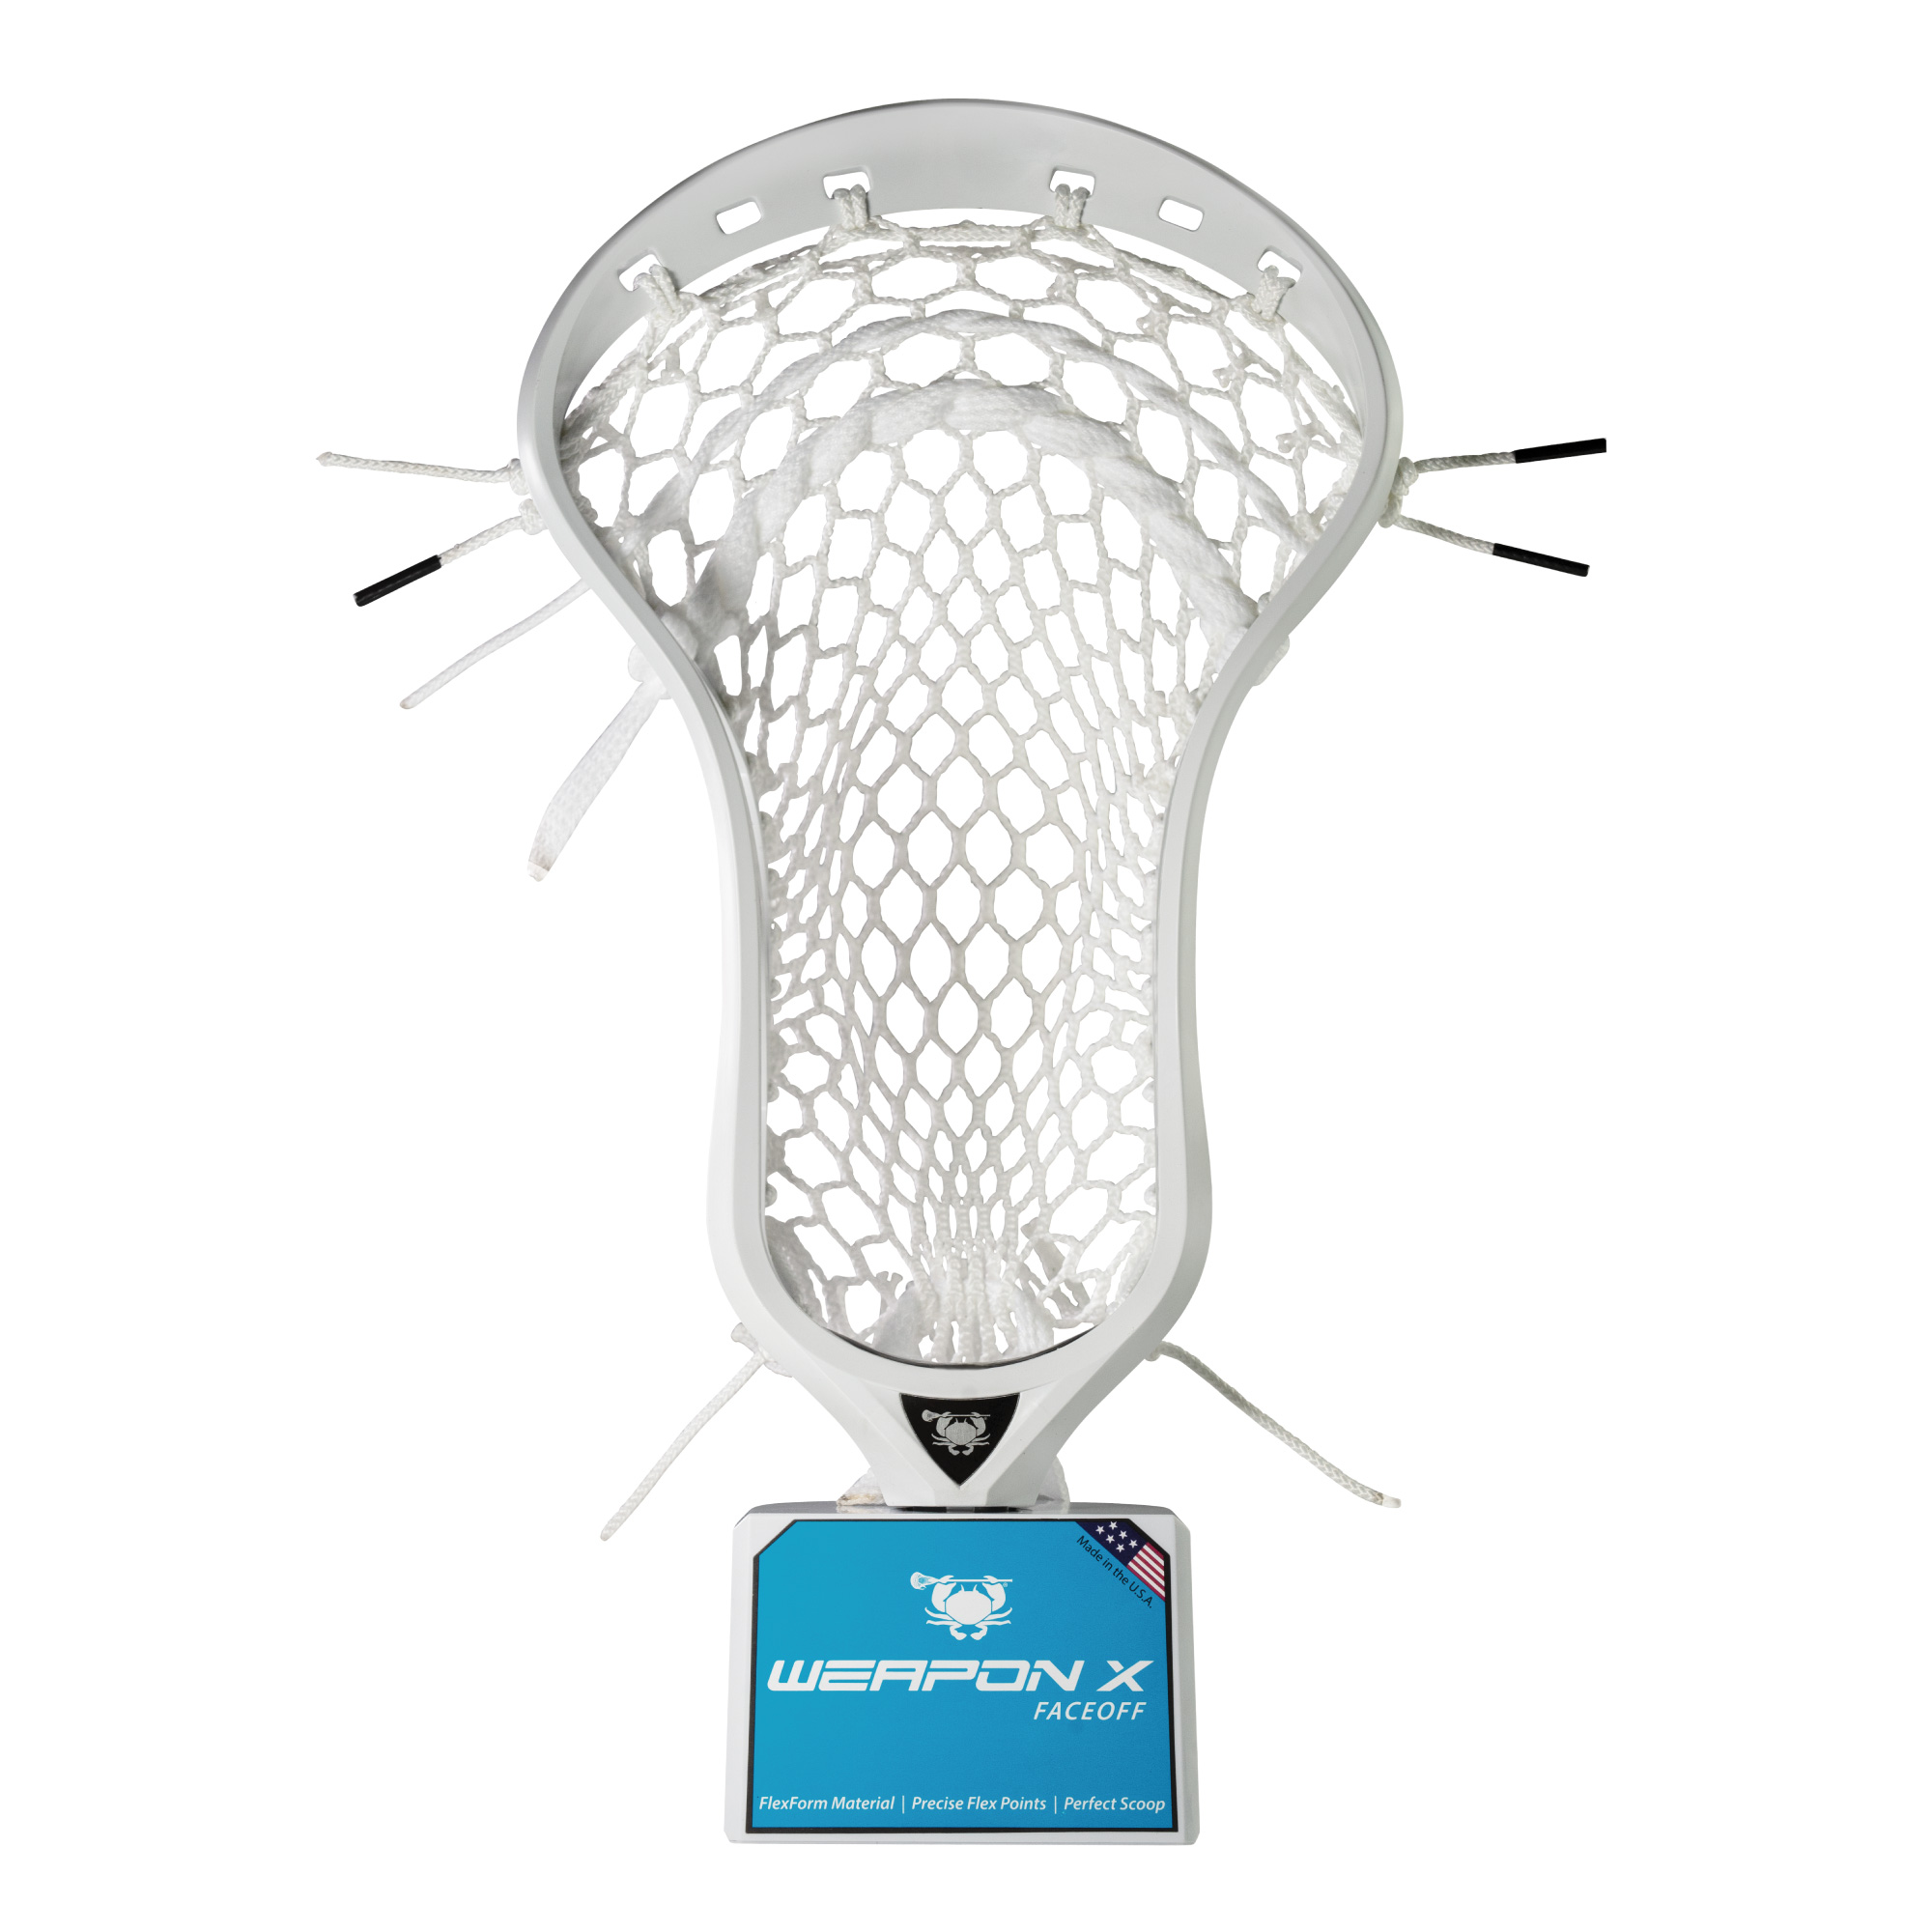 Brine RP3 X Unstrung Lacrosse Head NEW Lists @ $125 Various Colors